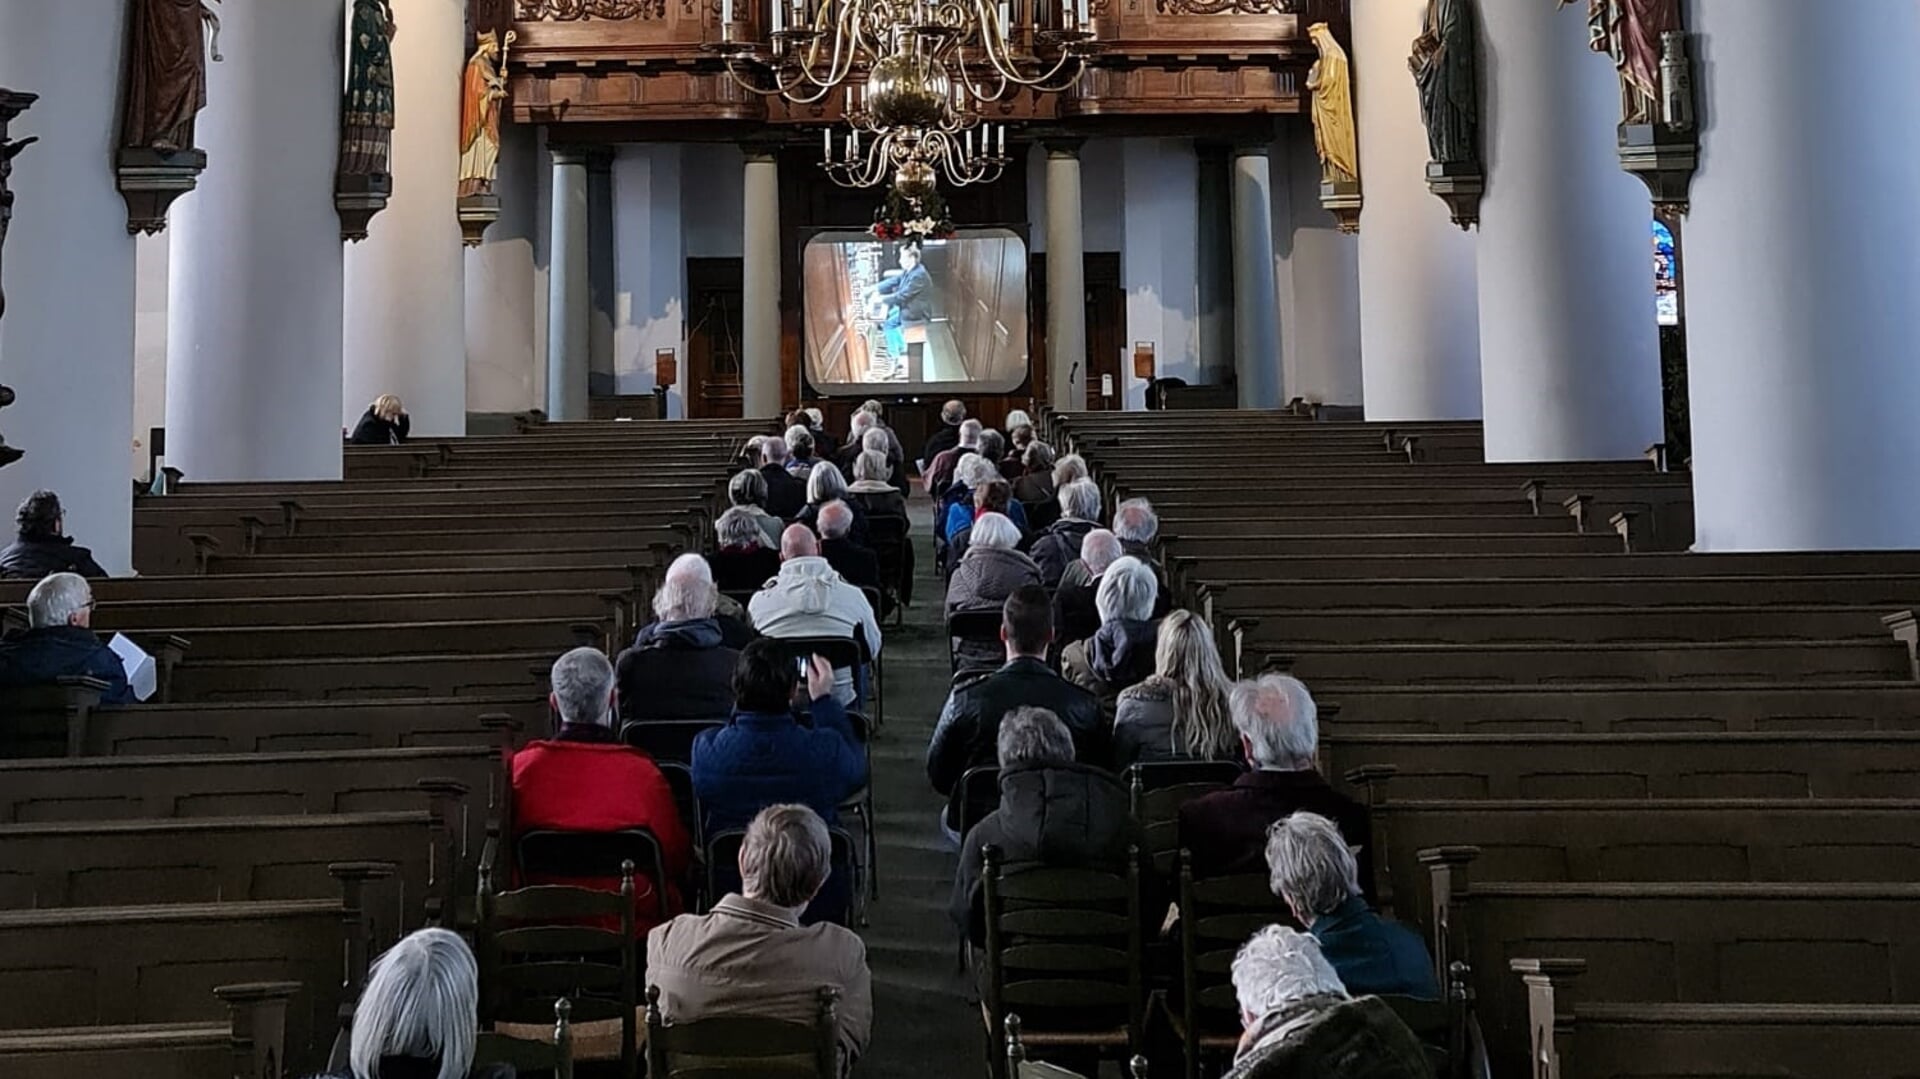 Meer dan vijftig luisteraars volgen de verrichtingen van Tommy van Doorn met hun oren en ogen. De organist is namelijk op een videoscherm te zien.